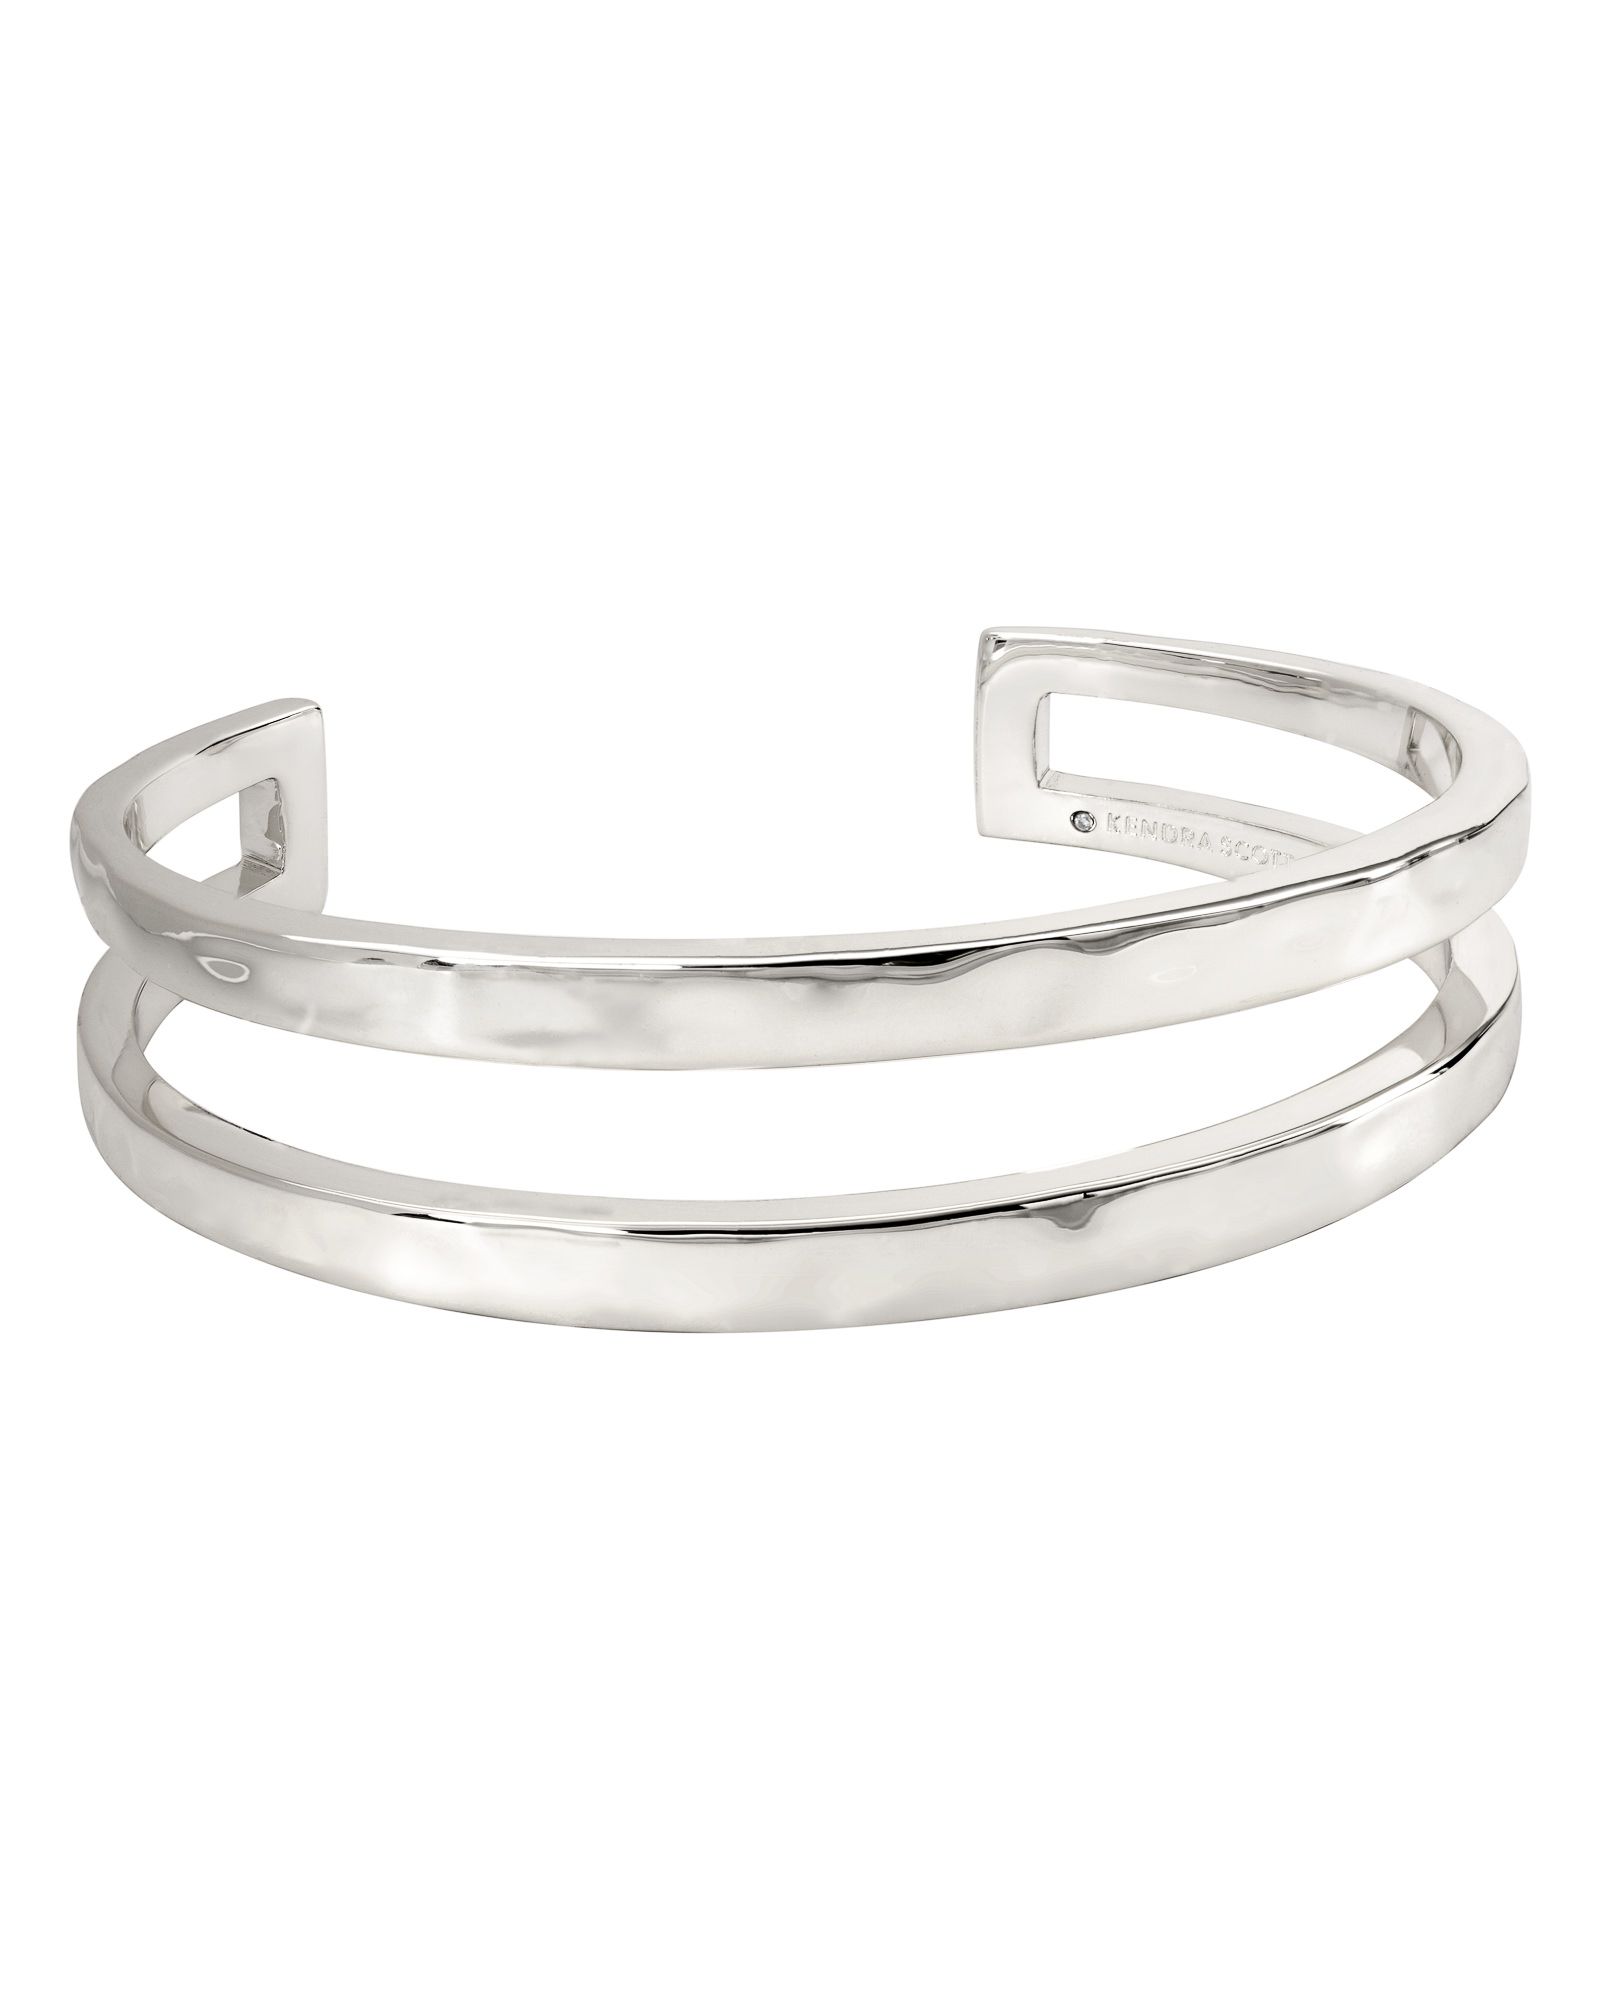 Zorte Cuff Bracelet in Silver - L | Kendra Scott